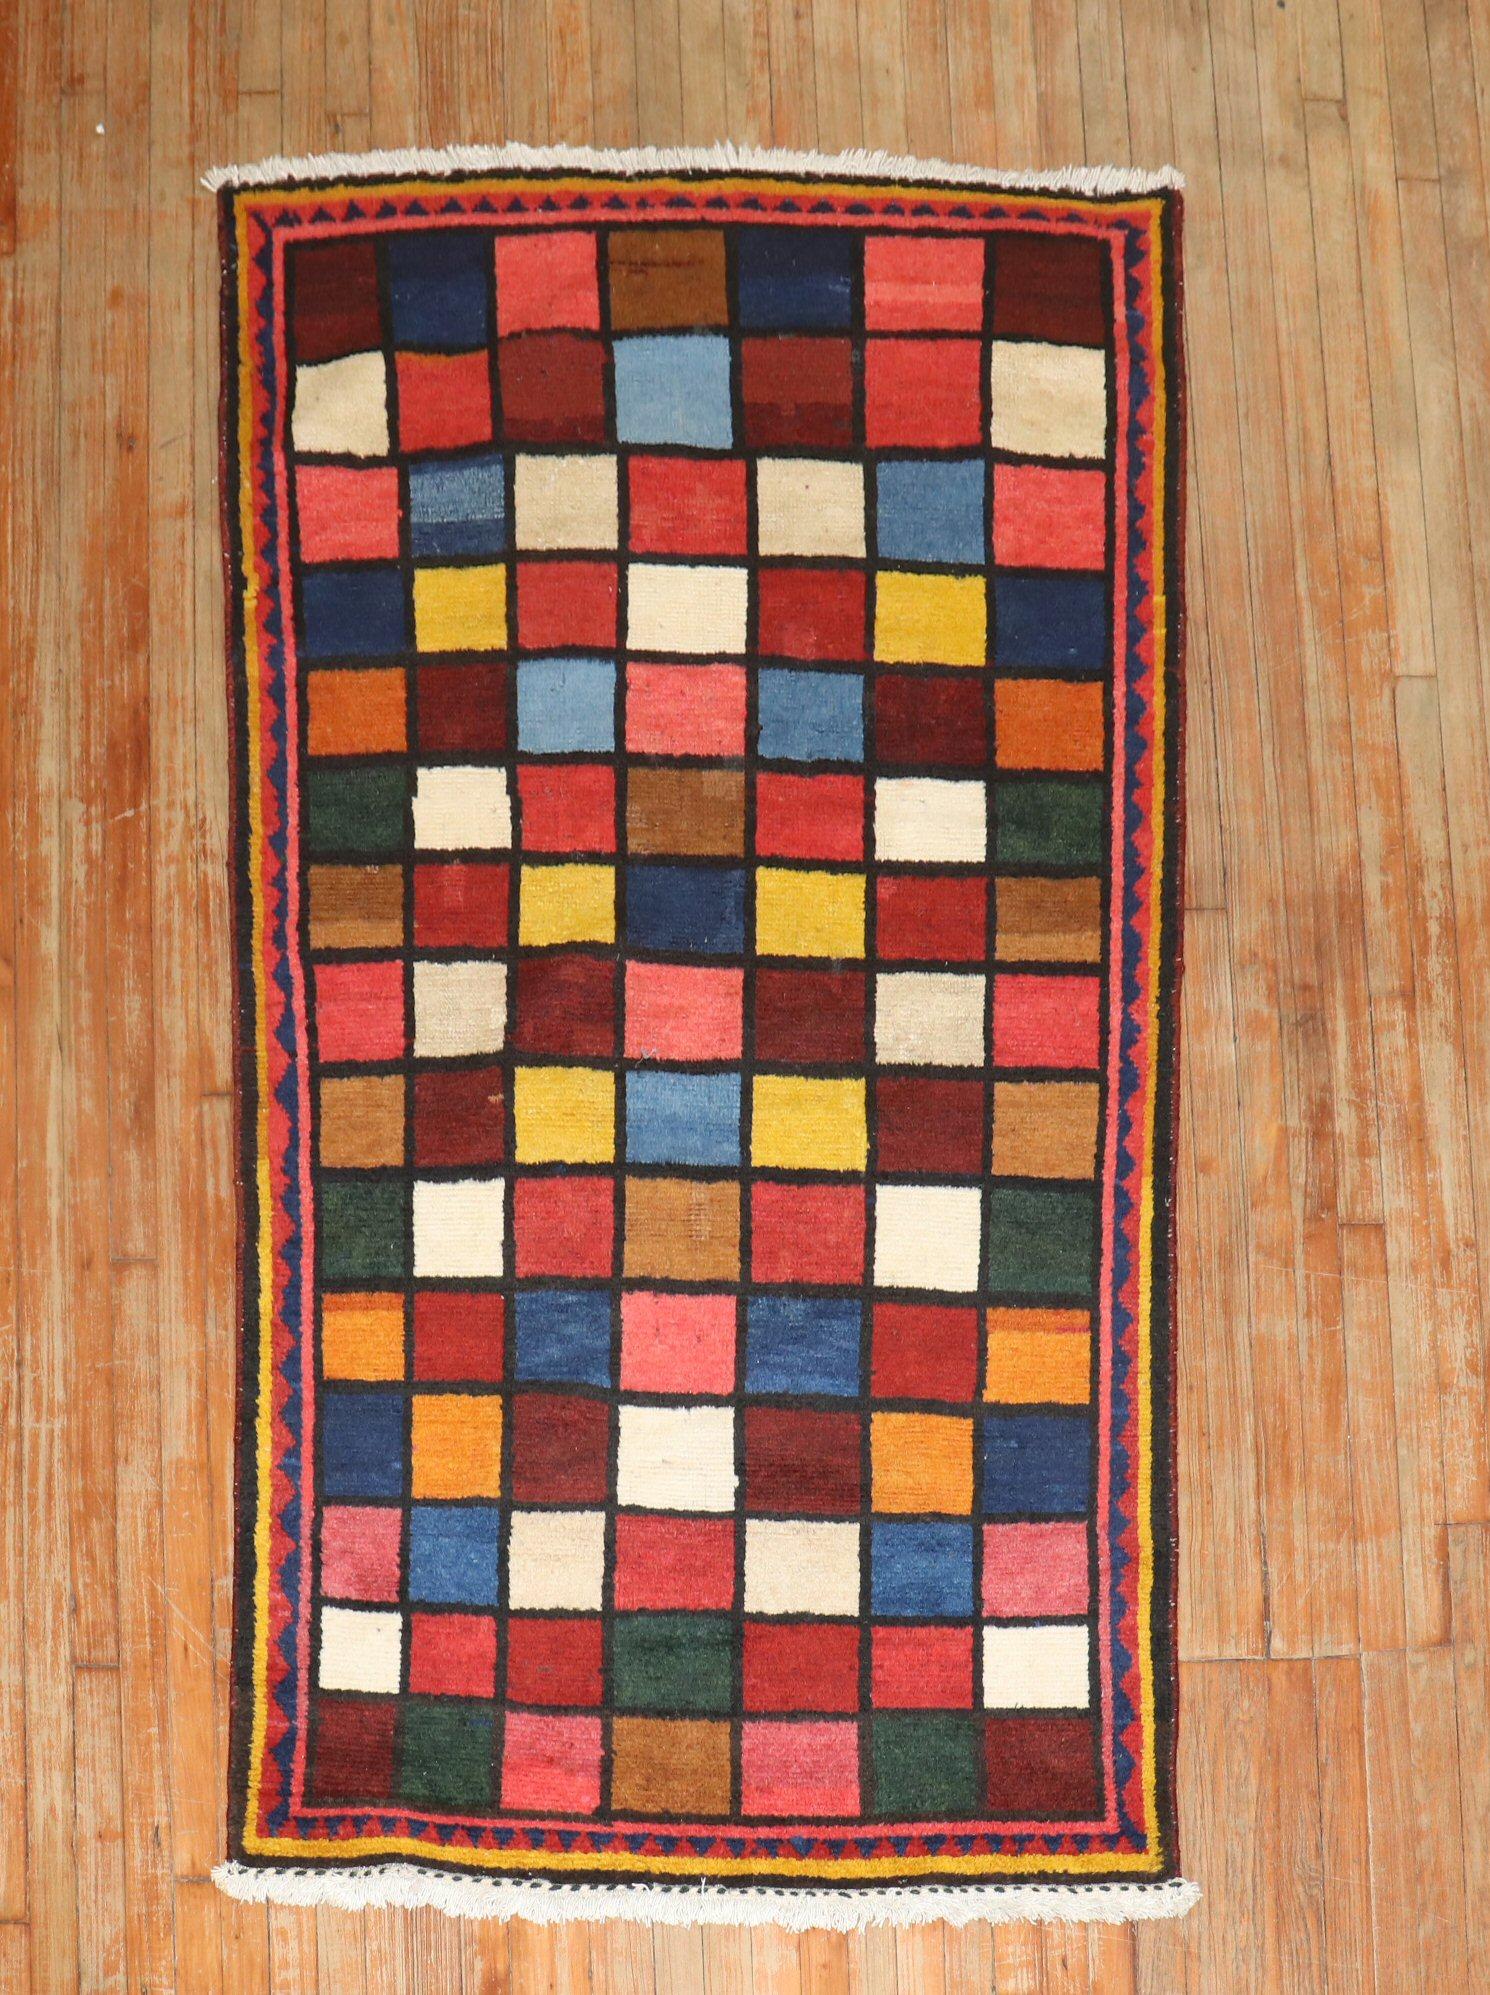 Persischer Gabbeh-Teppich aus der Mitte des 20. Jahrhunderts mit durchgehendem Schachbrettmuster

Maße: 4'' x 7'